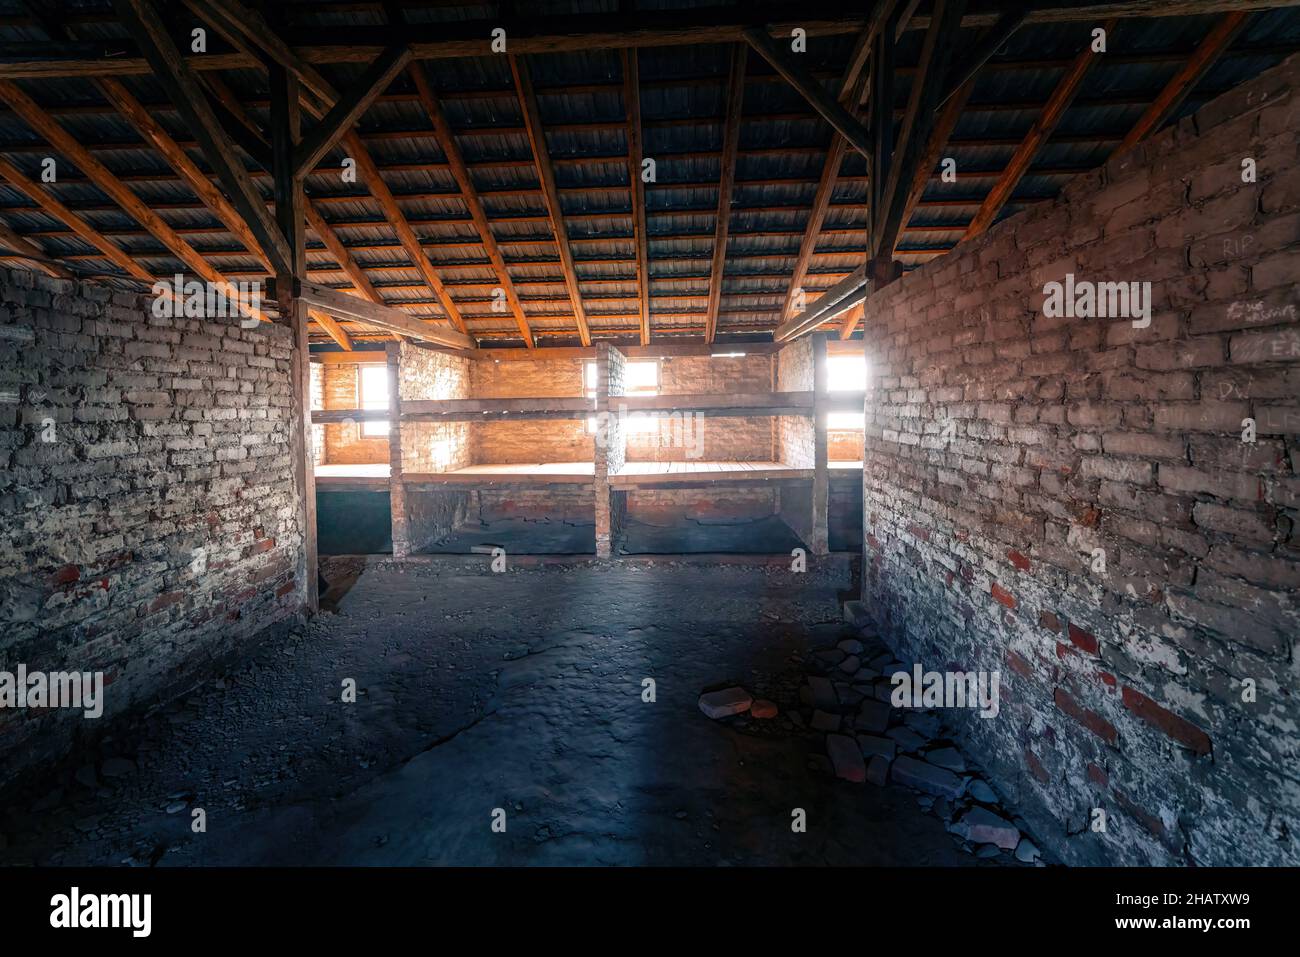 Häftlingskasernen in Auschwitz II - Birkenau, ehemaliges deutsches Konzentrations- und Vernichtungslager der Nazis - Polen Stockfoto